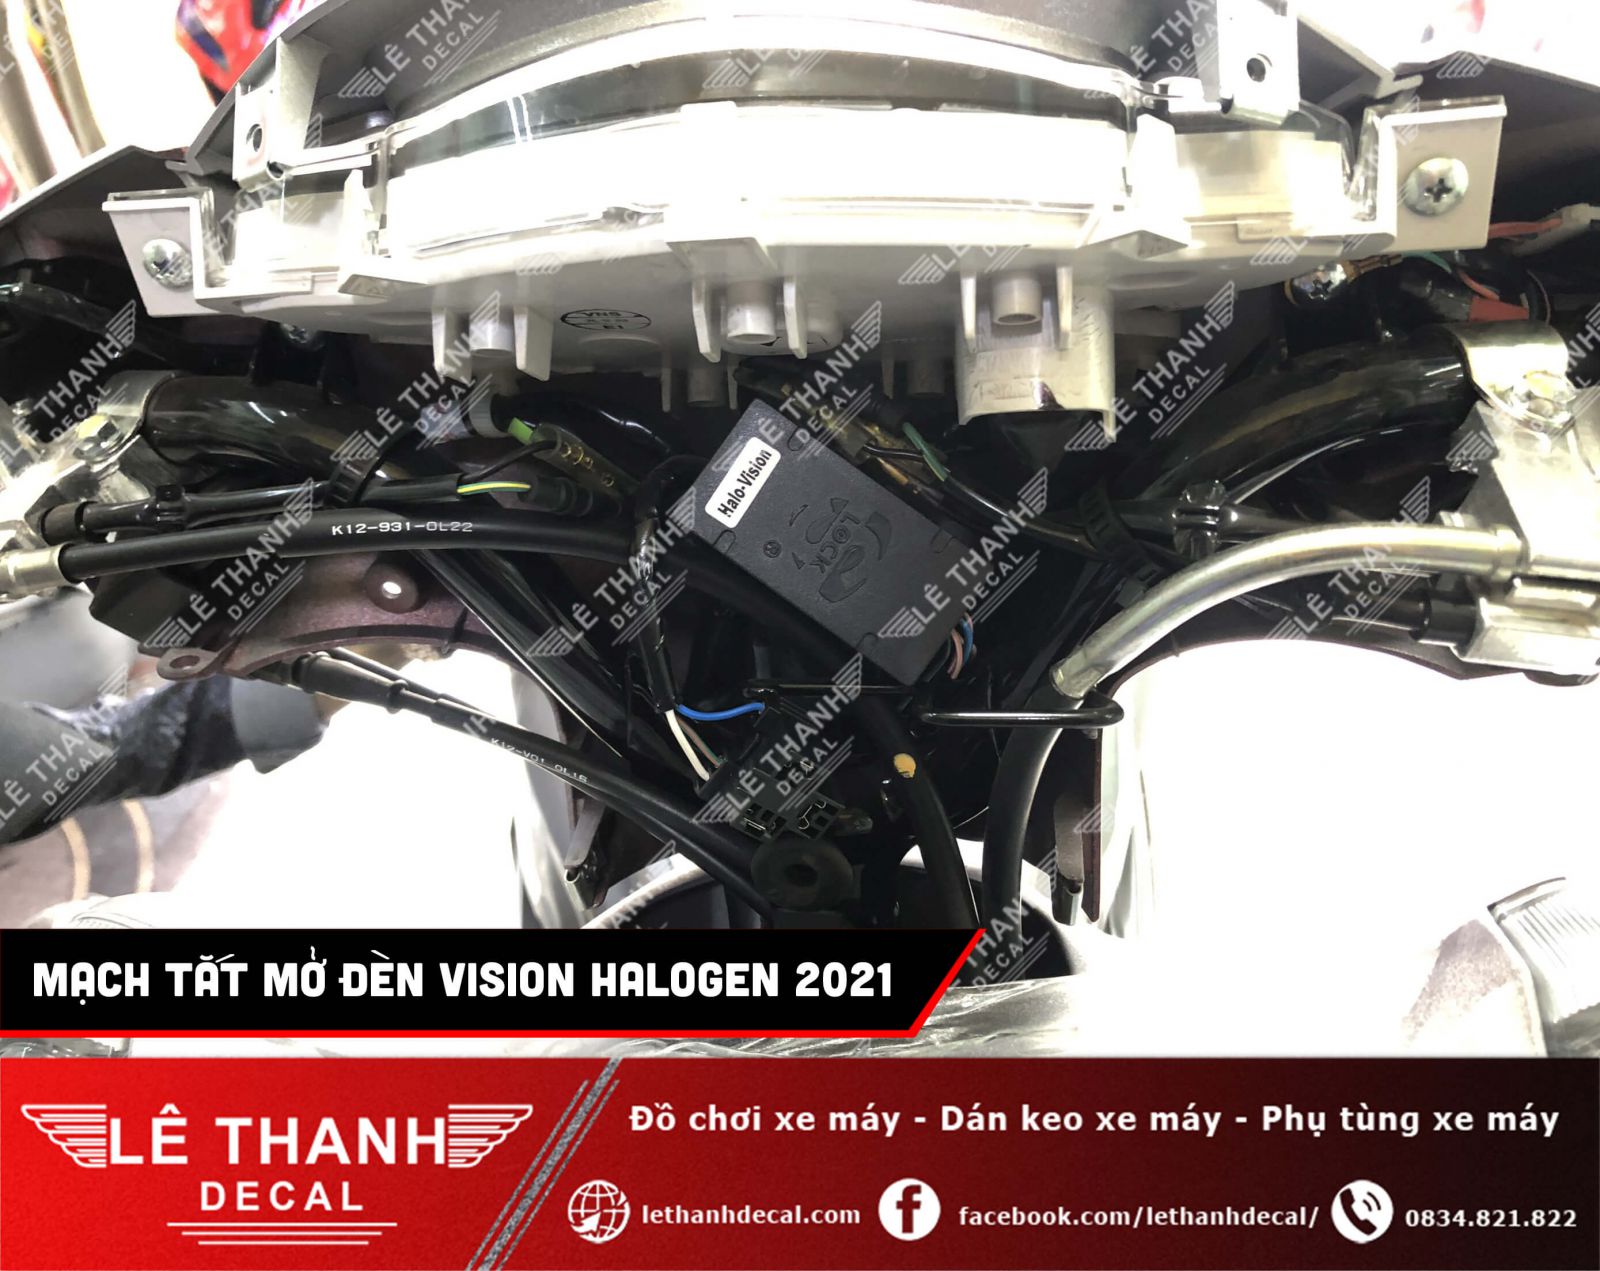 Mạch tắt mở đèn xe máy Vision 2021